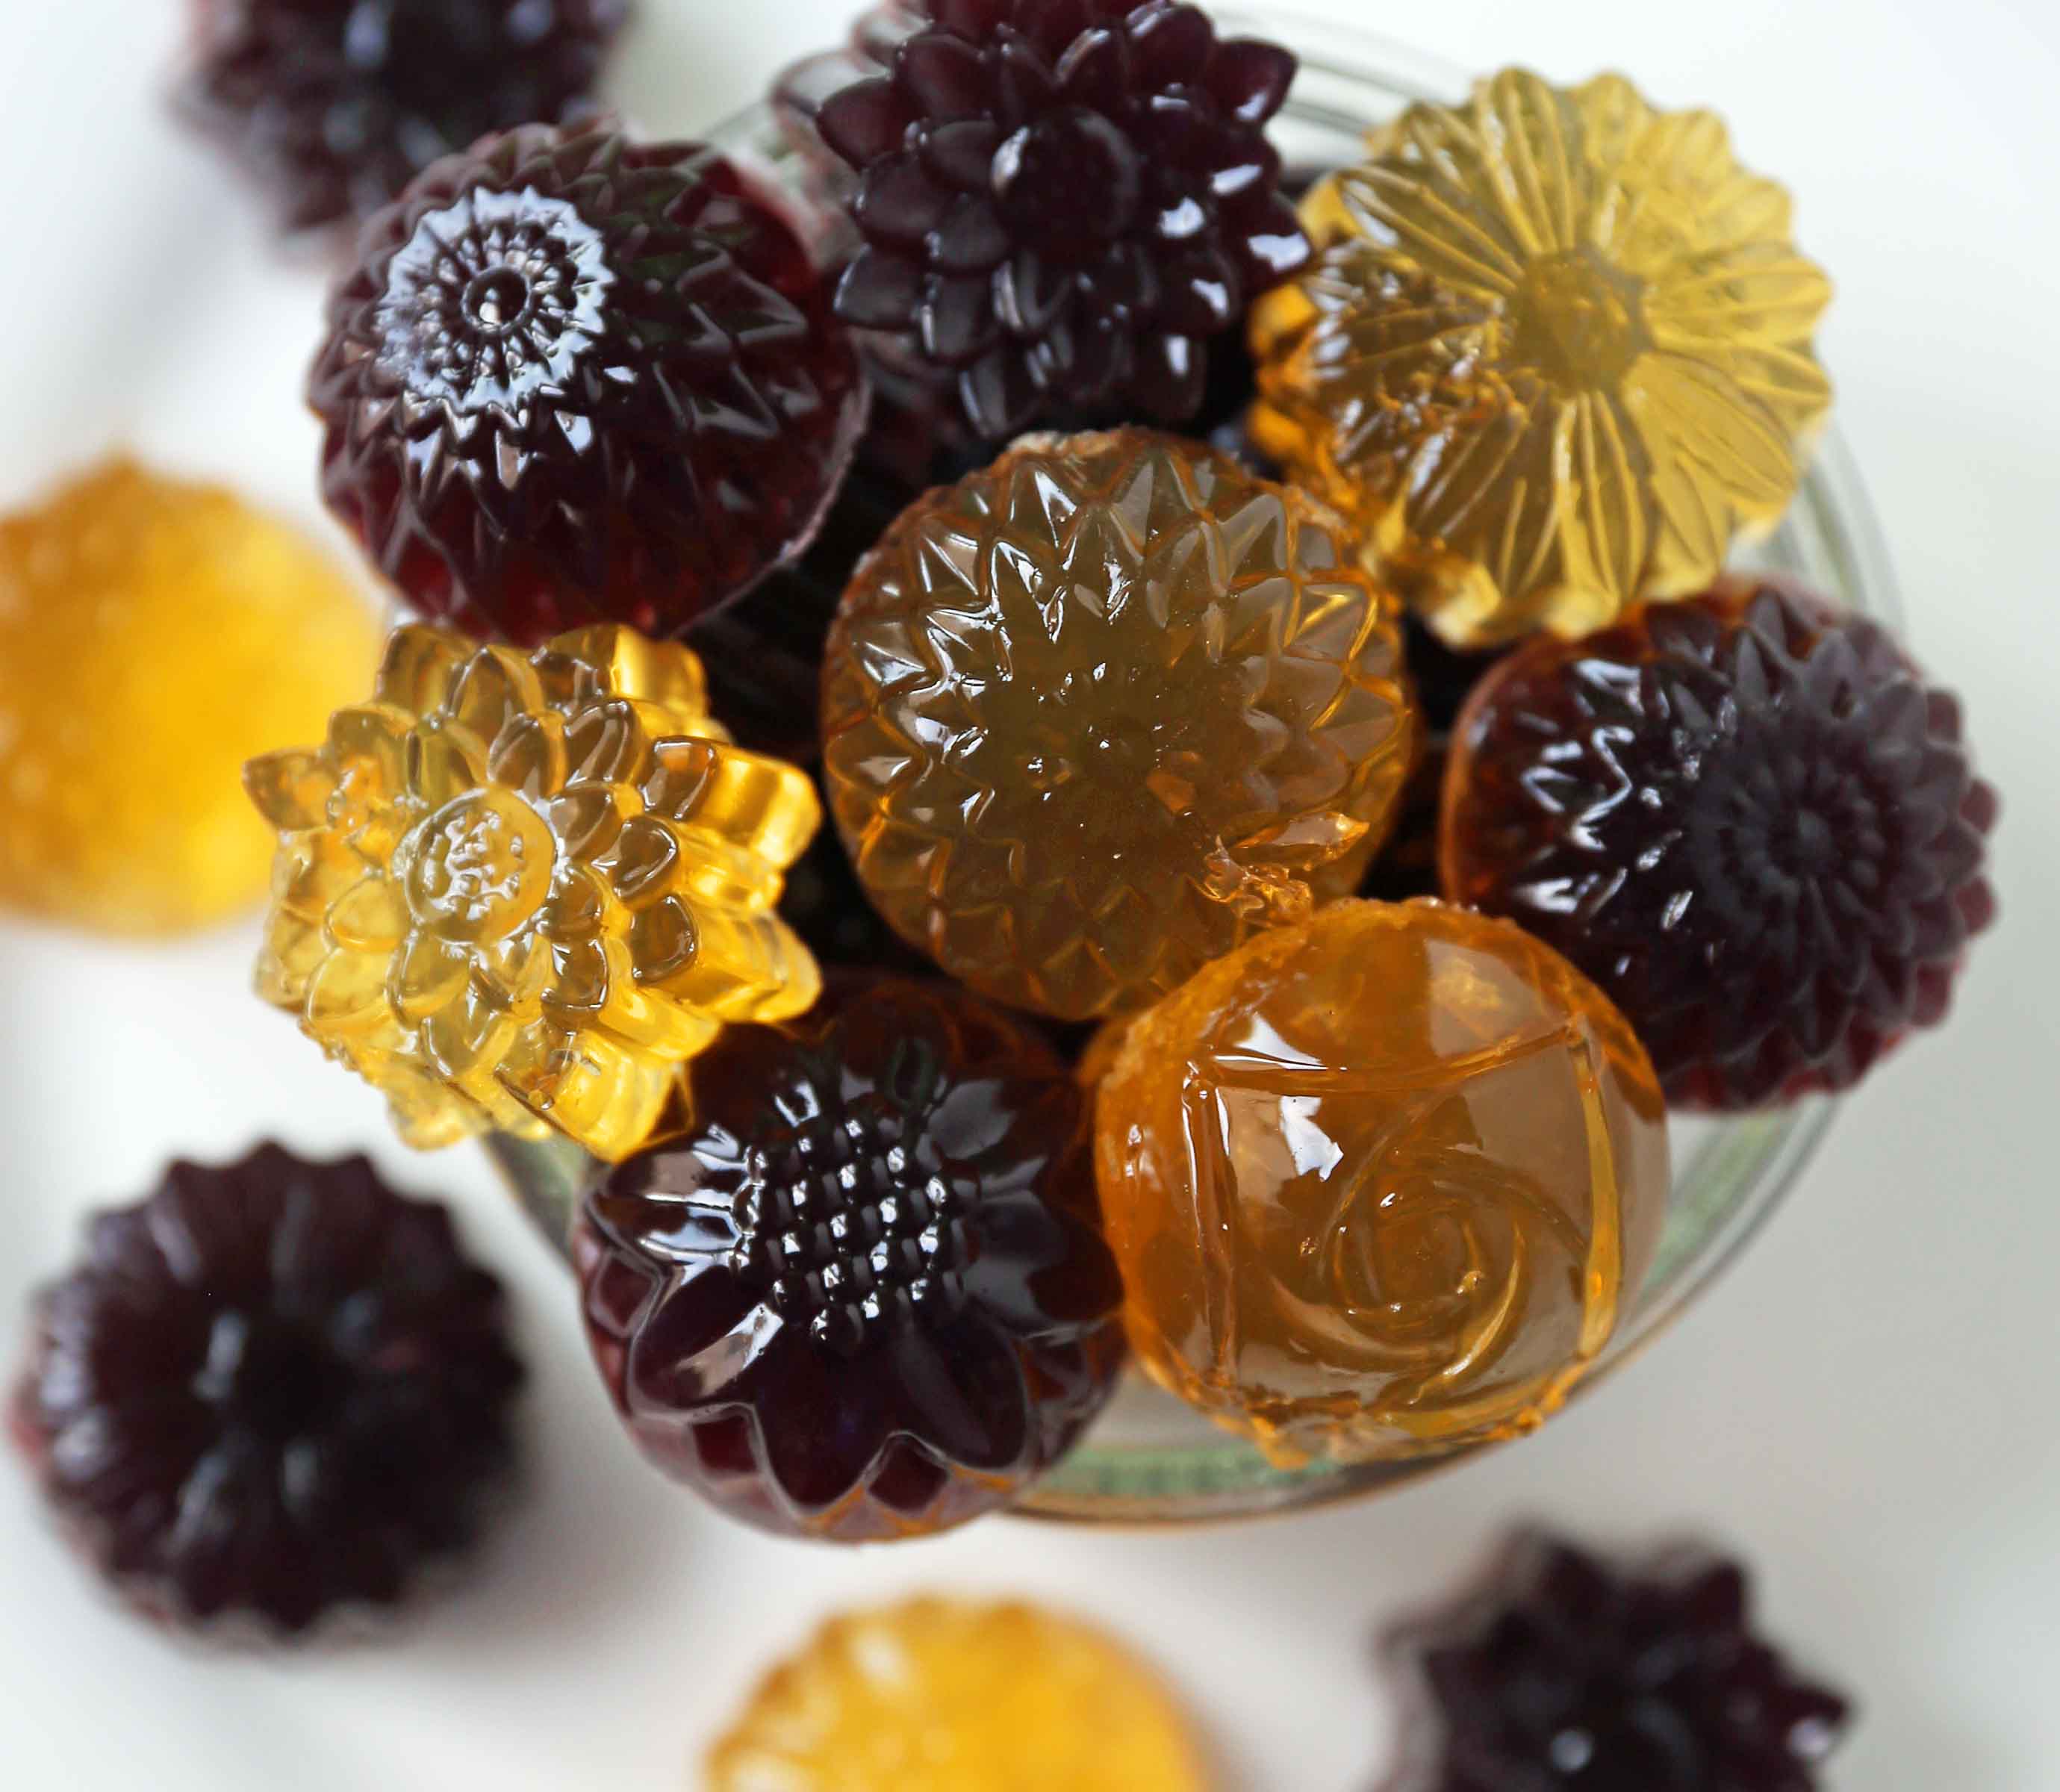 https://www.modernhoney.com/wp-content/uploads/2018/08/Homemade-Gummy-Fruit-Snacks-4.jpg